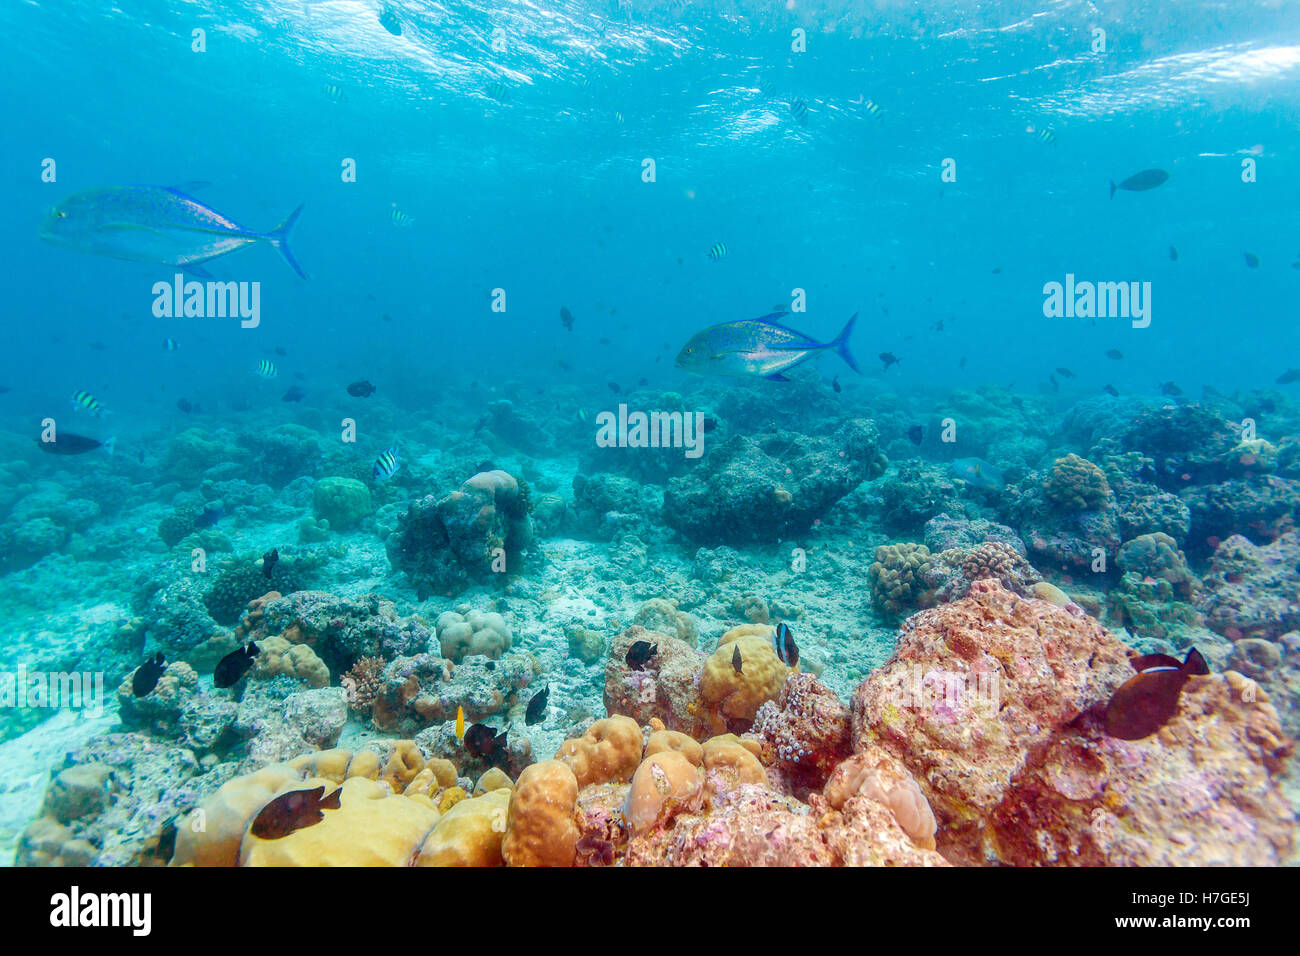 Groupe de thon les carangues (Caranx melampygus) dans les eaux peu profondes des récifs coralliens, Maldives Banque D'Images